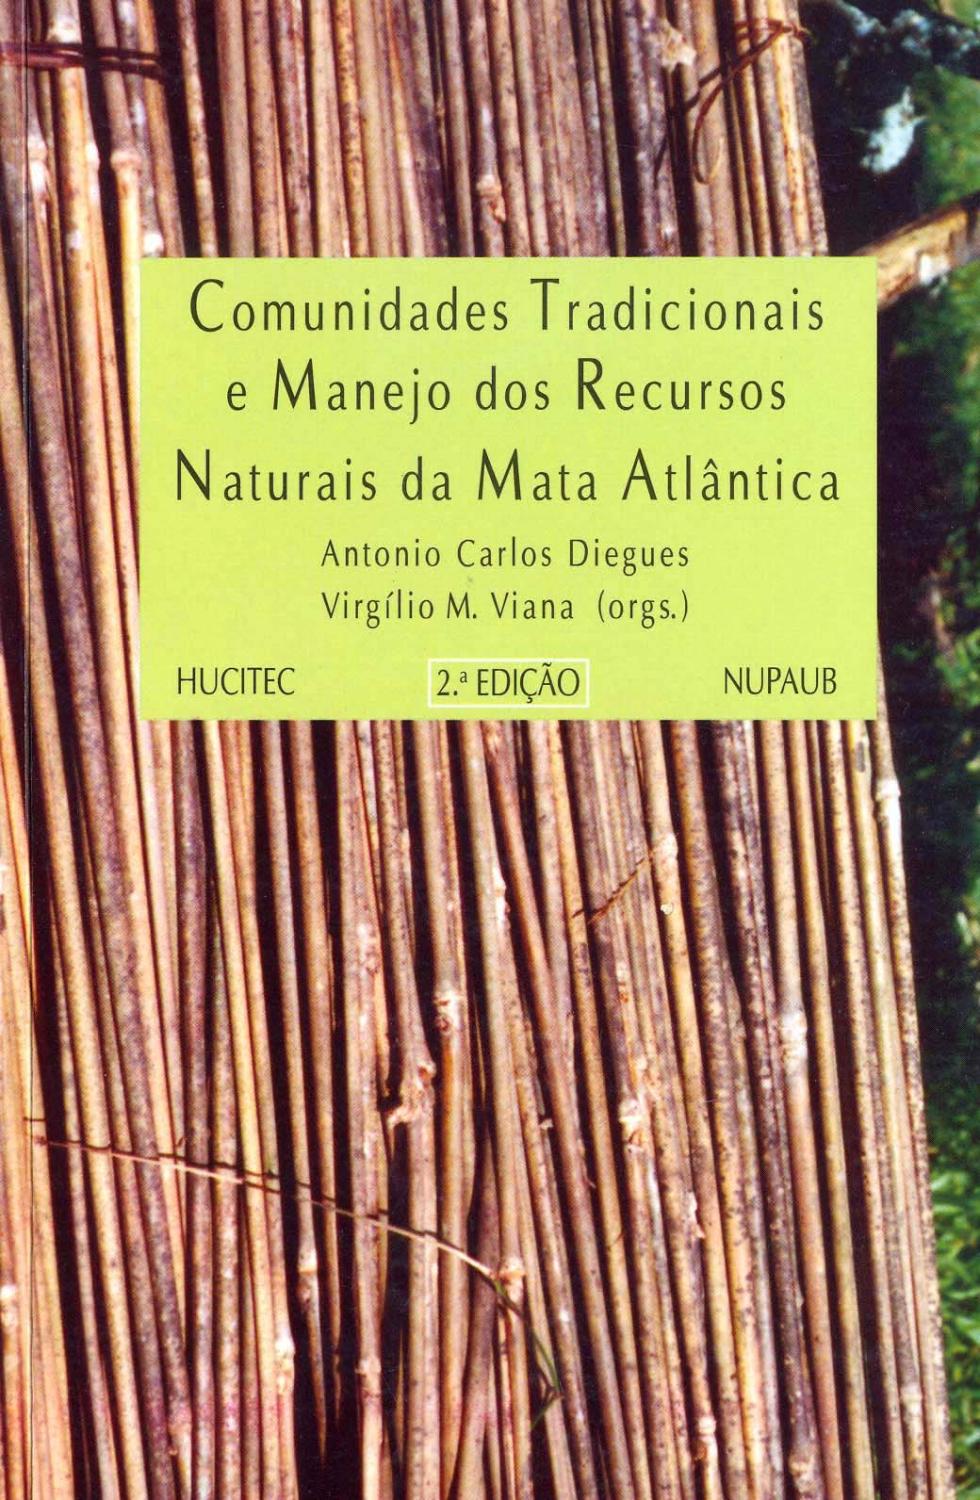 Comunidades tradicionais em manejo dos recursos naturais da Mata Atlântica. -- ( Ecologia e cultura ; 5 ) - Seminário Alternativas de Manejo Sustentável dos Recursos Naturais do Vale do Ribeira